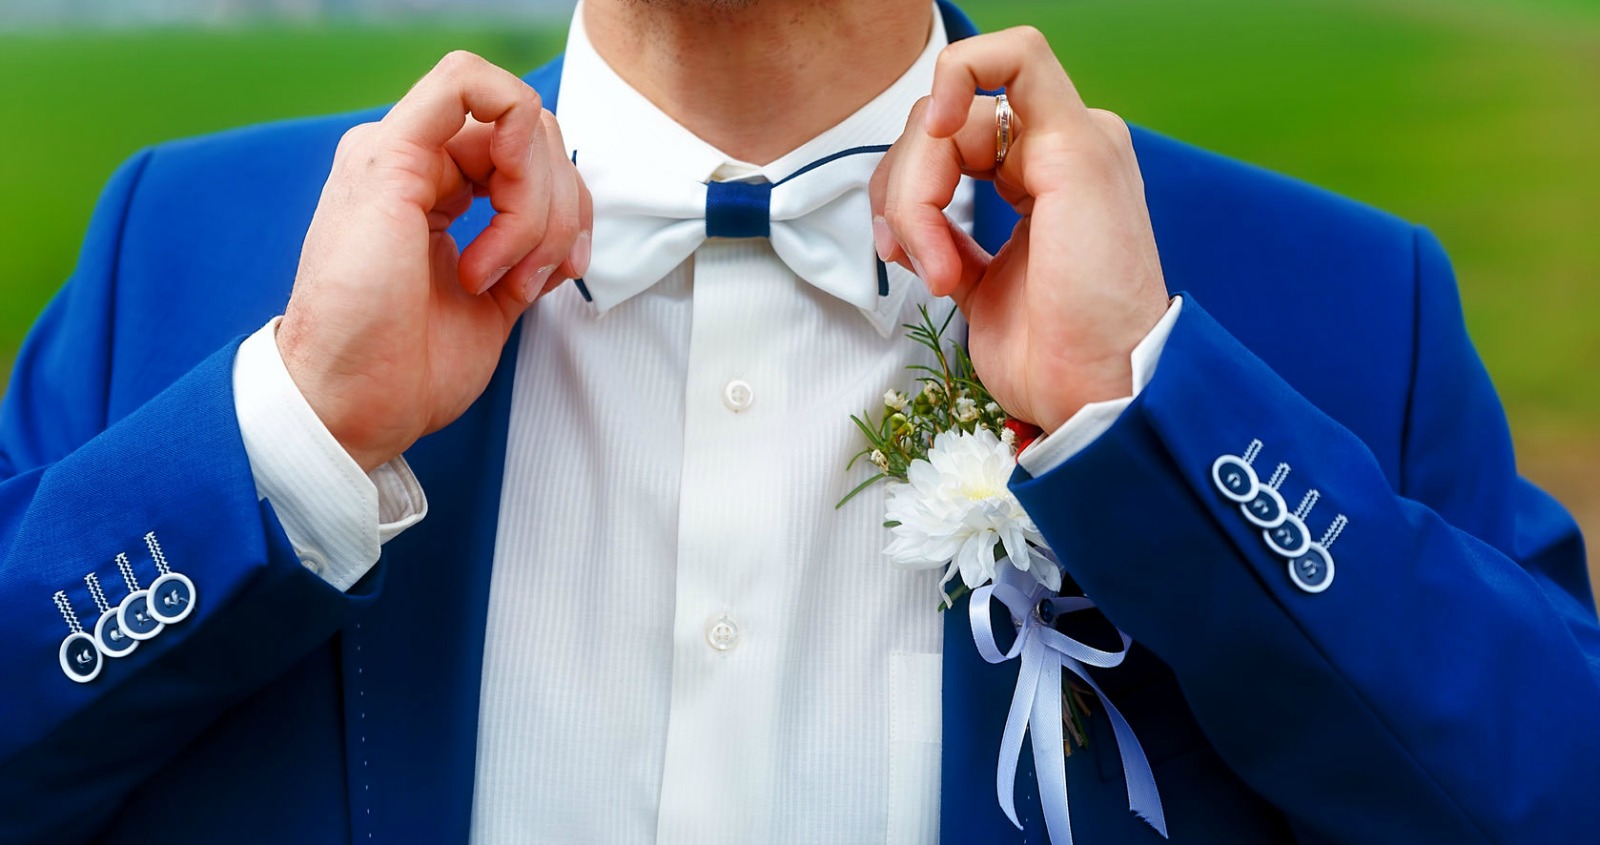 Summer Wedding Attire for Men: 2016 Update